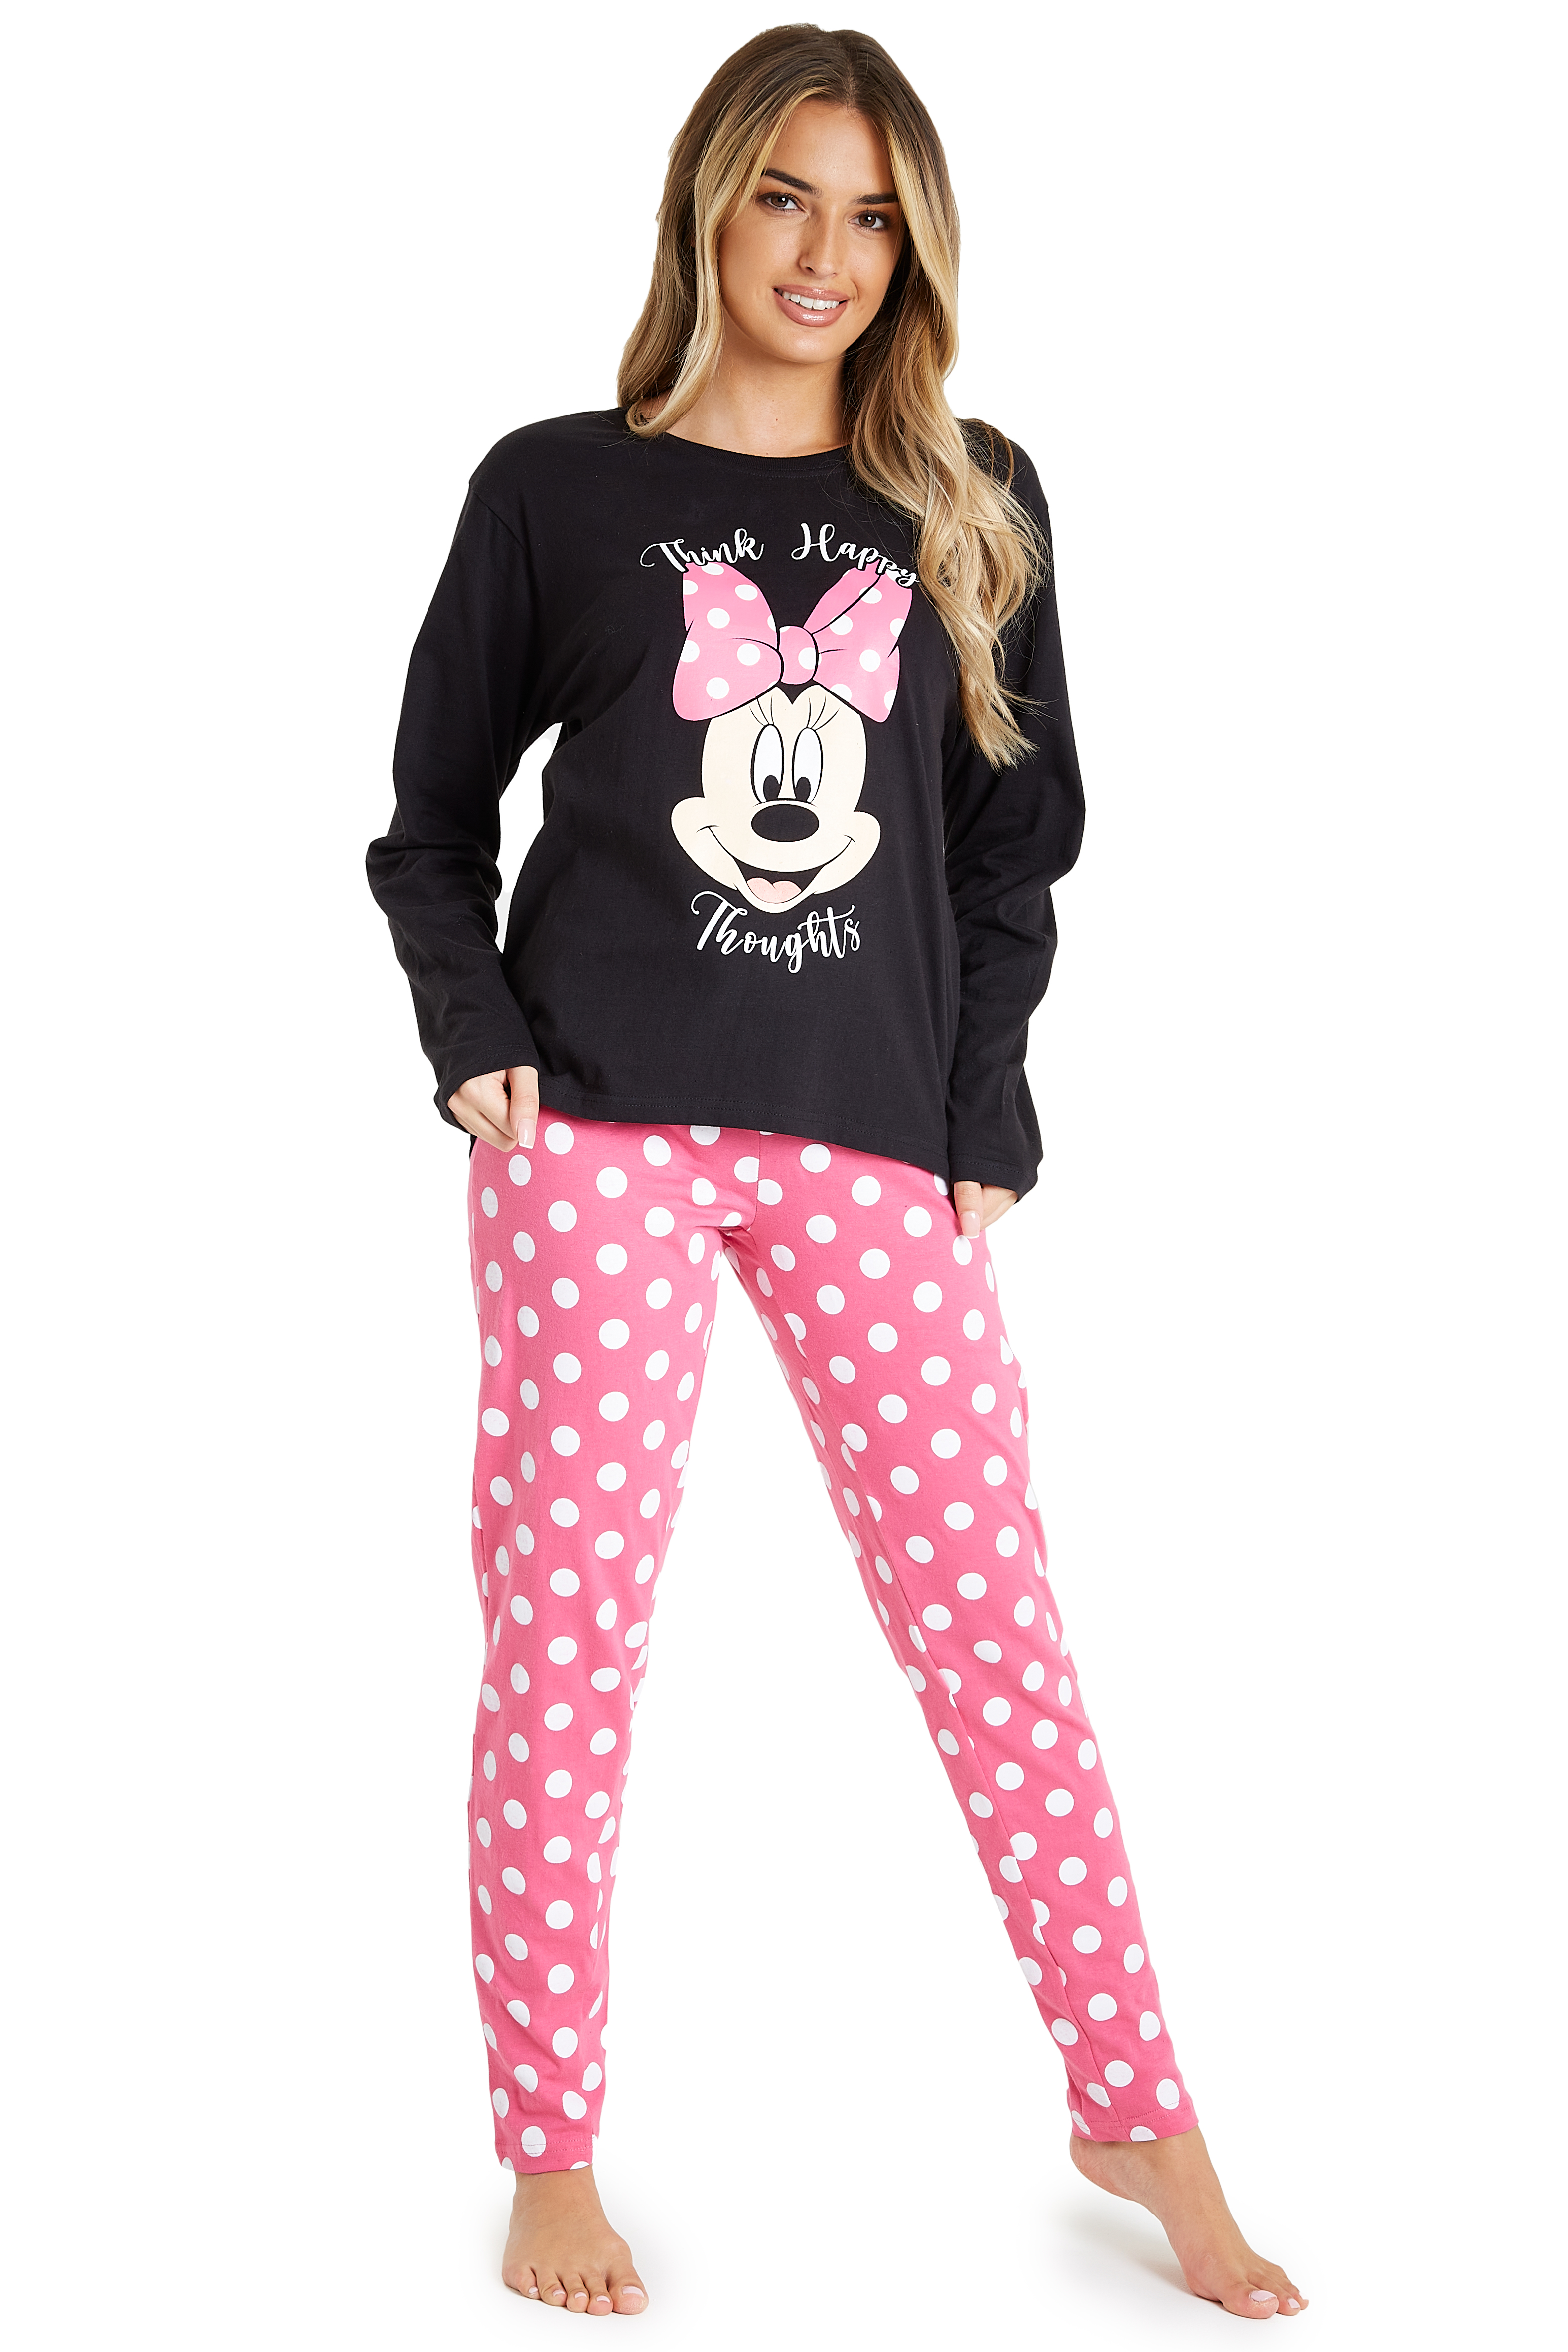 Aftrekken tragedie Kalmte Disney Womens Pyjama Sets, Minnie Mouse Ladies Cotton PJs | eBay